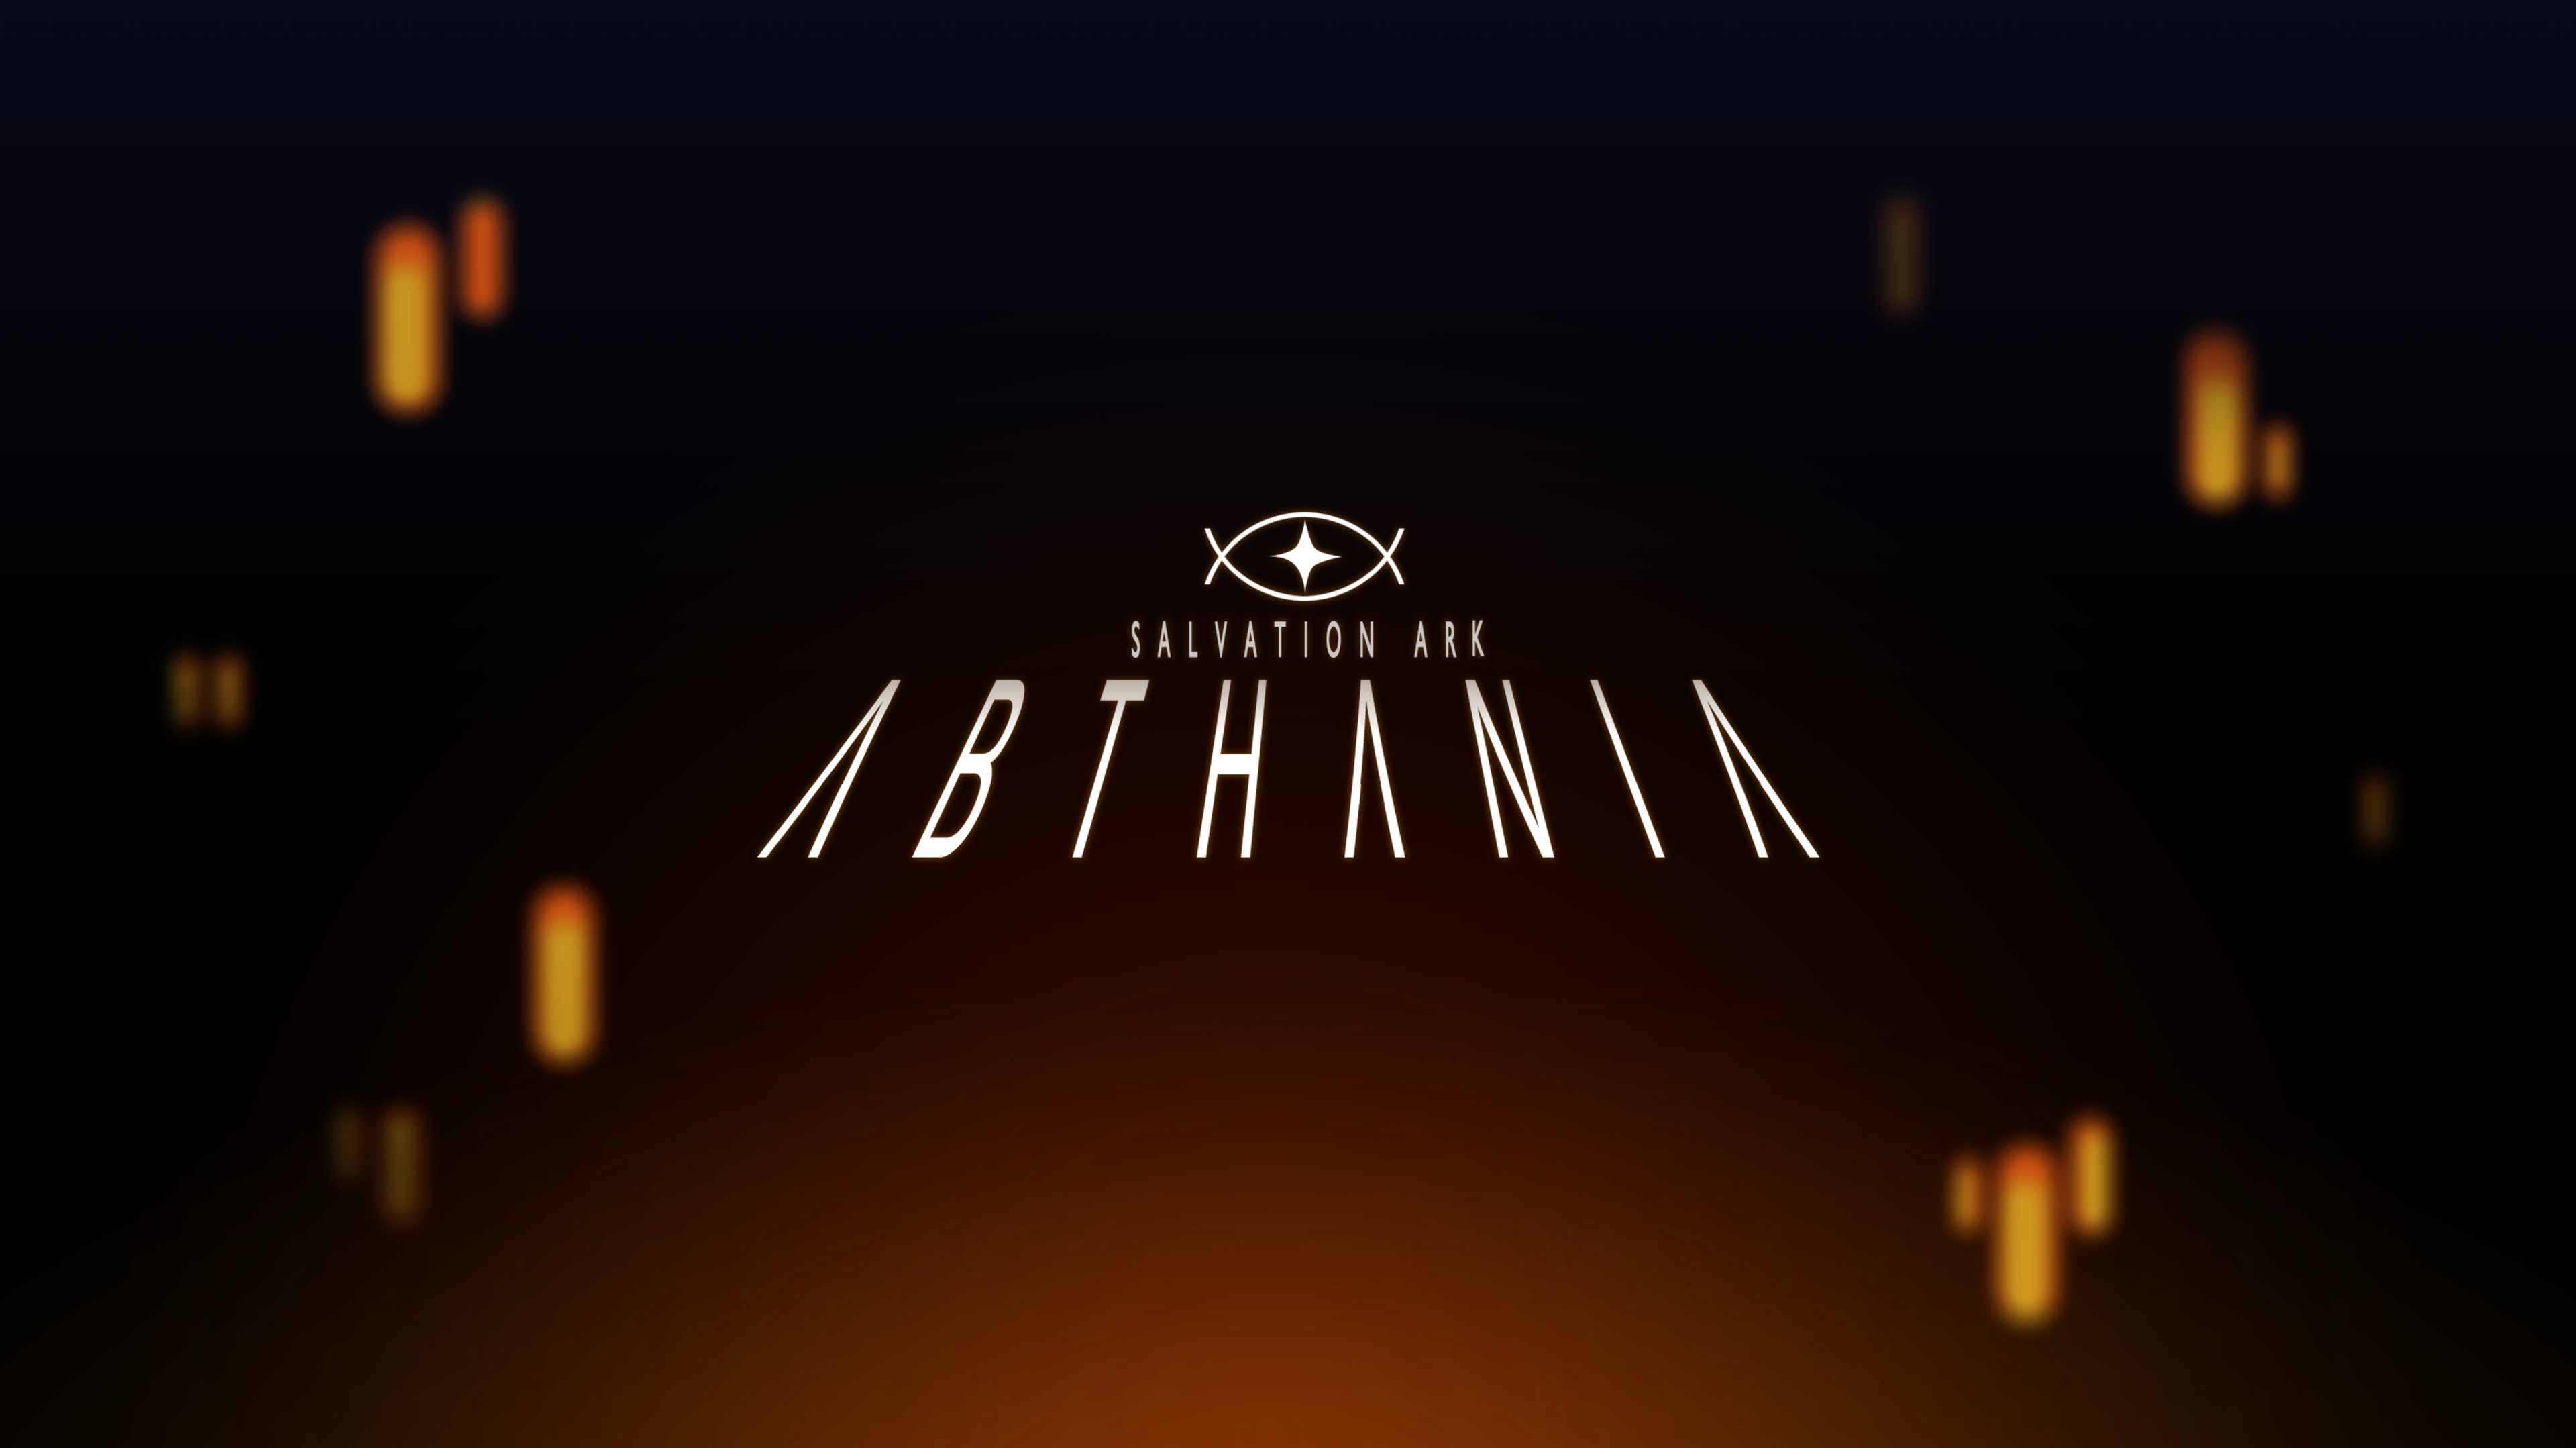 Salvation Ark: Abthania